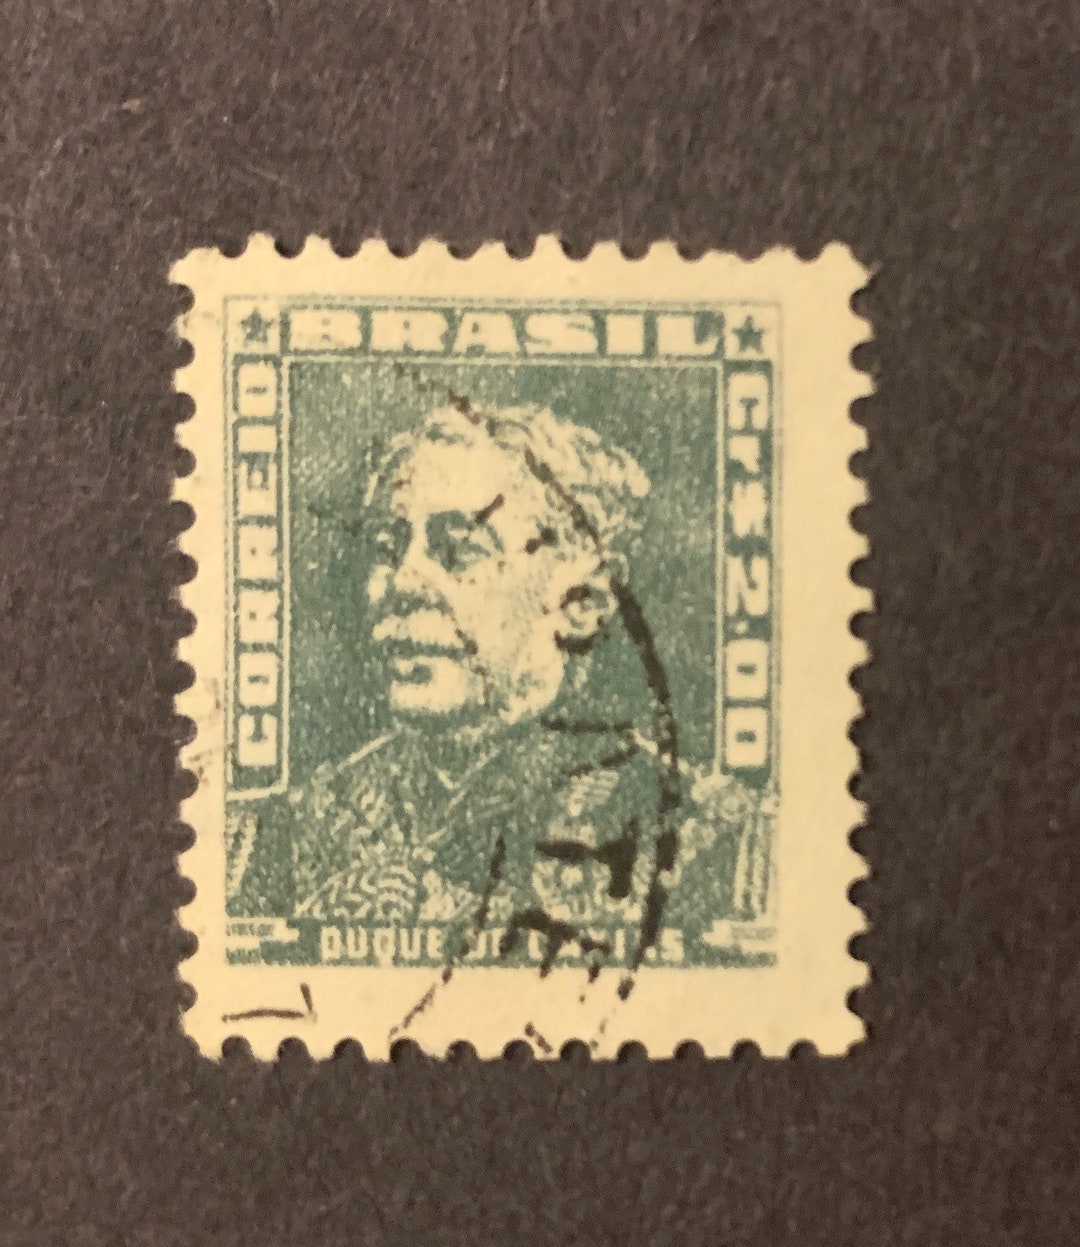 Brazil Stamps - 1950's - Duque de Caxias Cr 1,00 - MNG